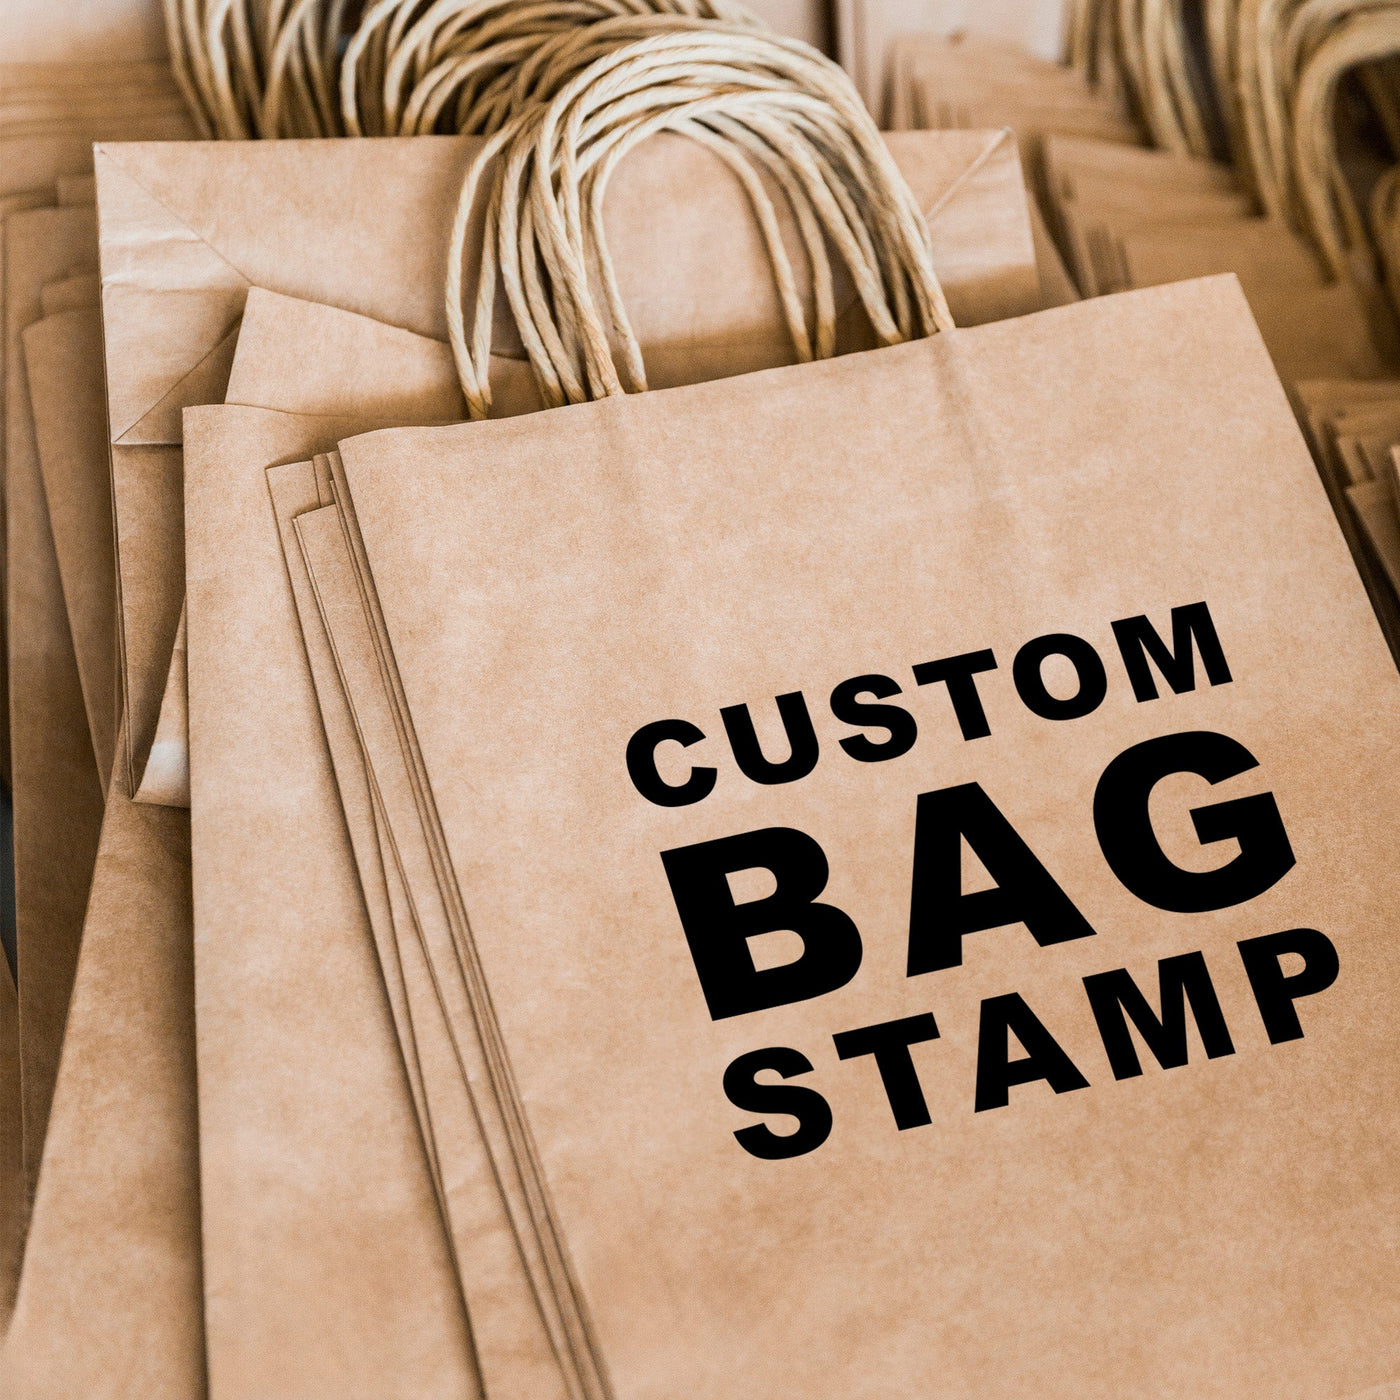 Custom Rubber Stamp for Large Boxes | Large Bag Stamp | Heirloom Seals